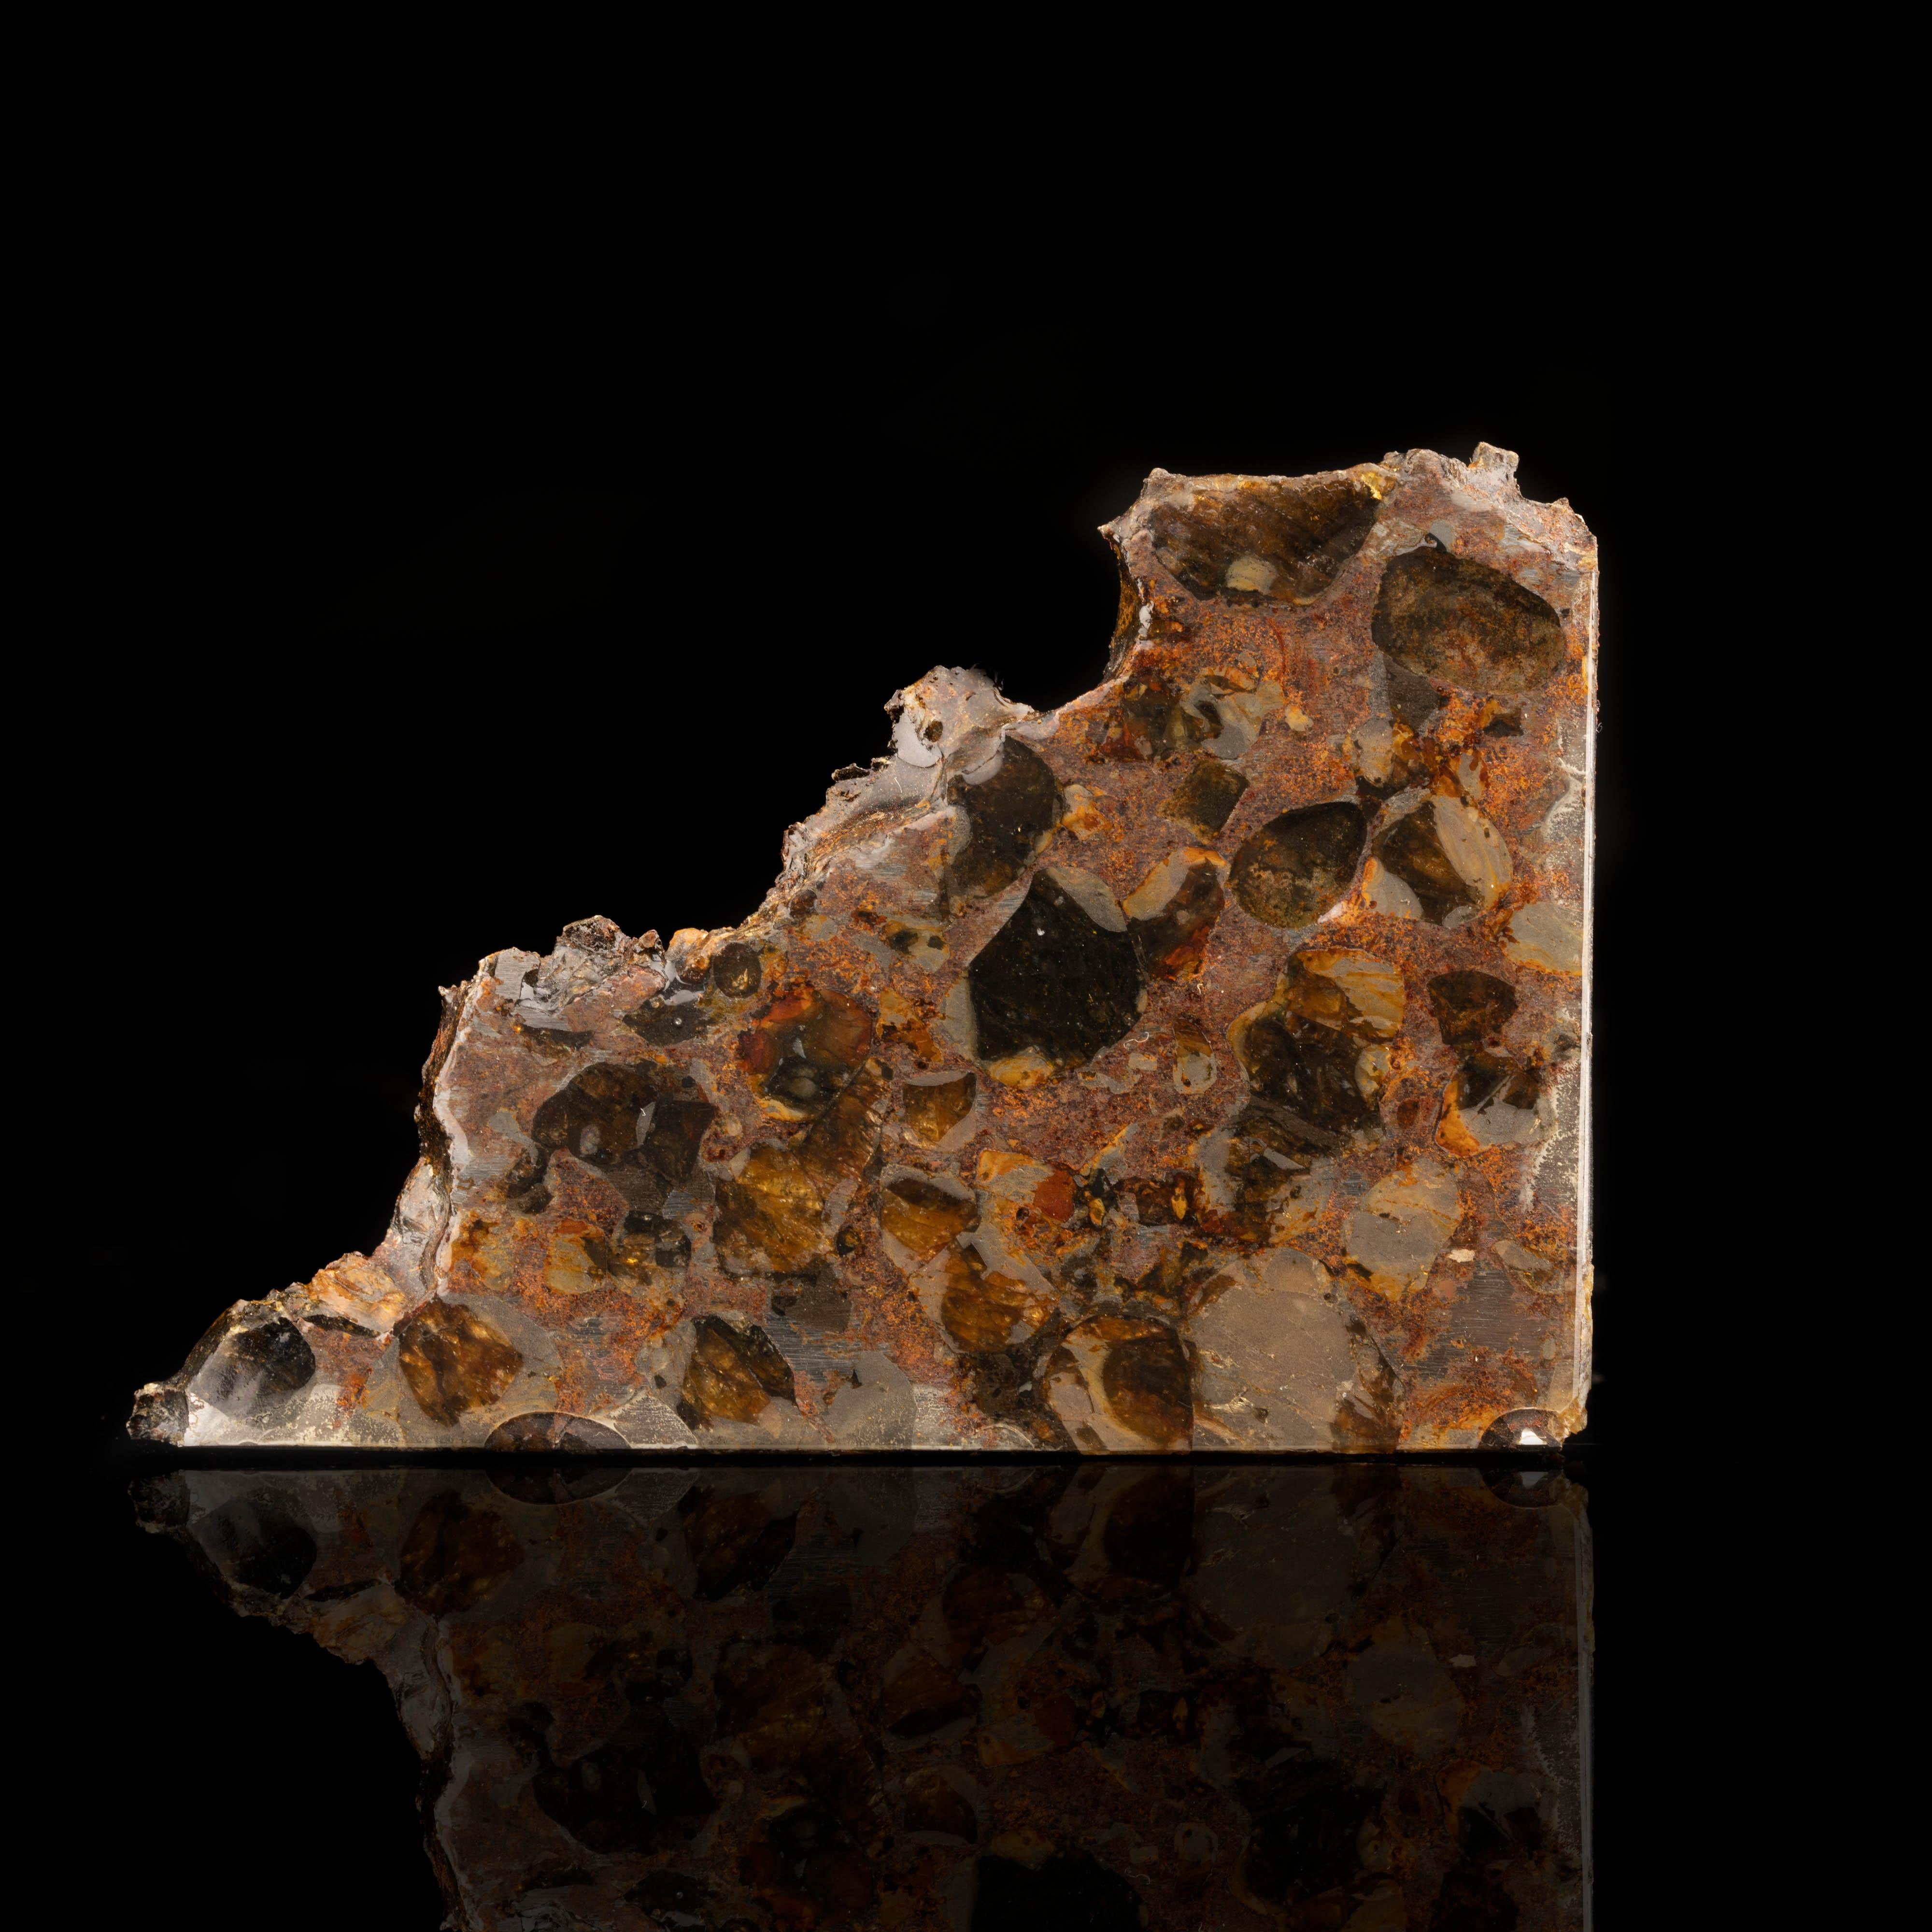 Cette météorite provient de la Collection of Parts et faisait autrefois partie de la collection privée de Robert A. Haag, Meteorite Man. Il comprend un certificat d'authenticité signé par Haag et est présenté dans une boîte de présentation